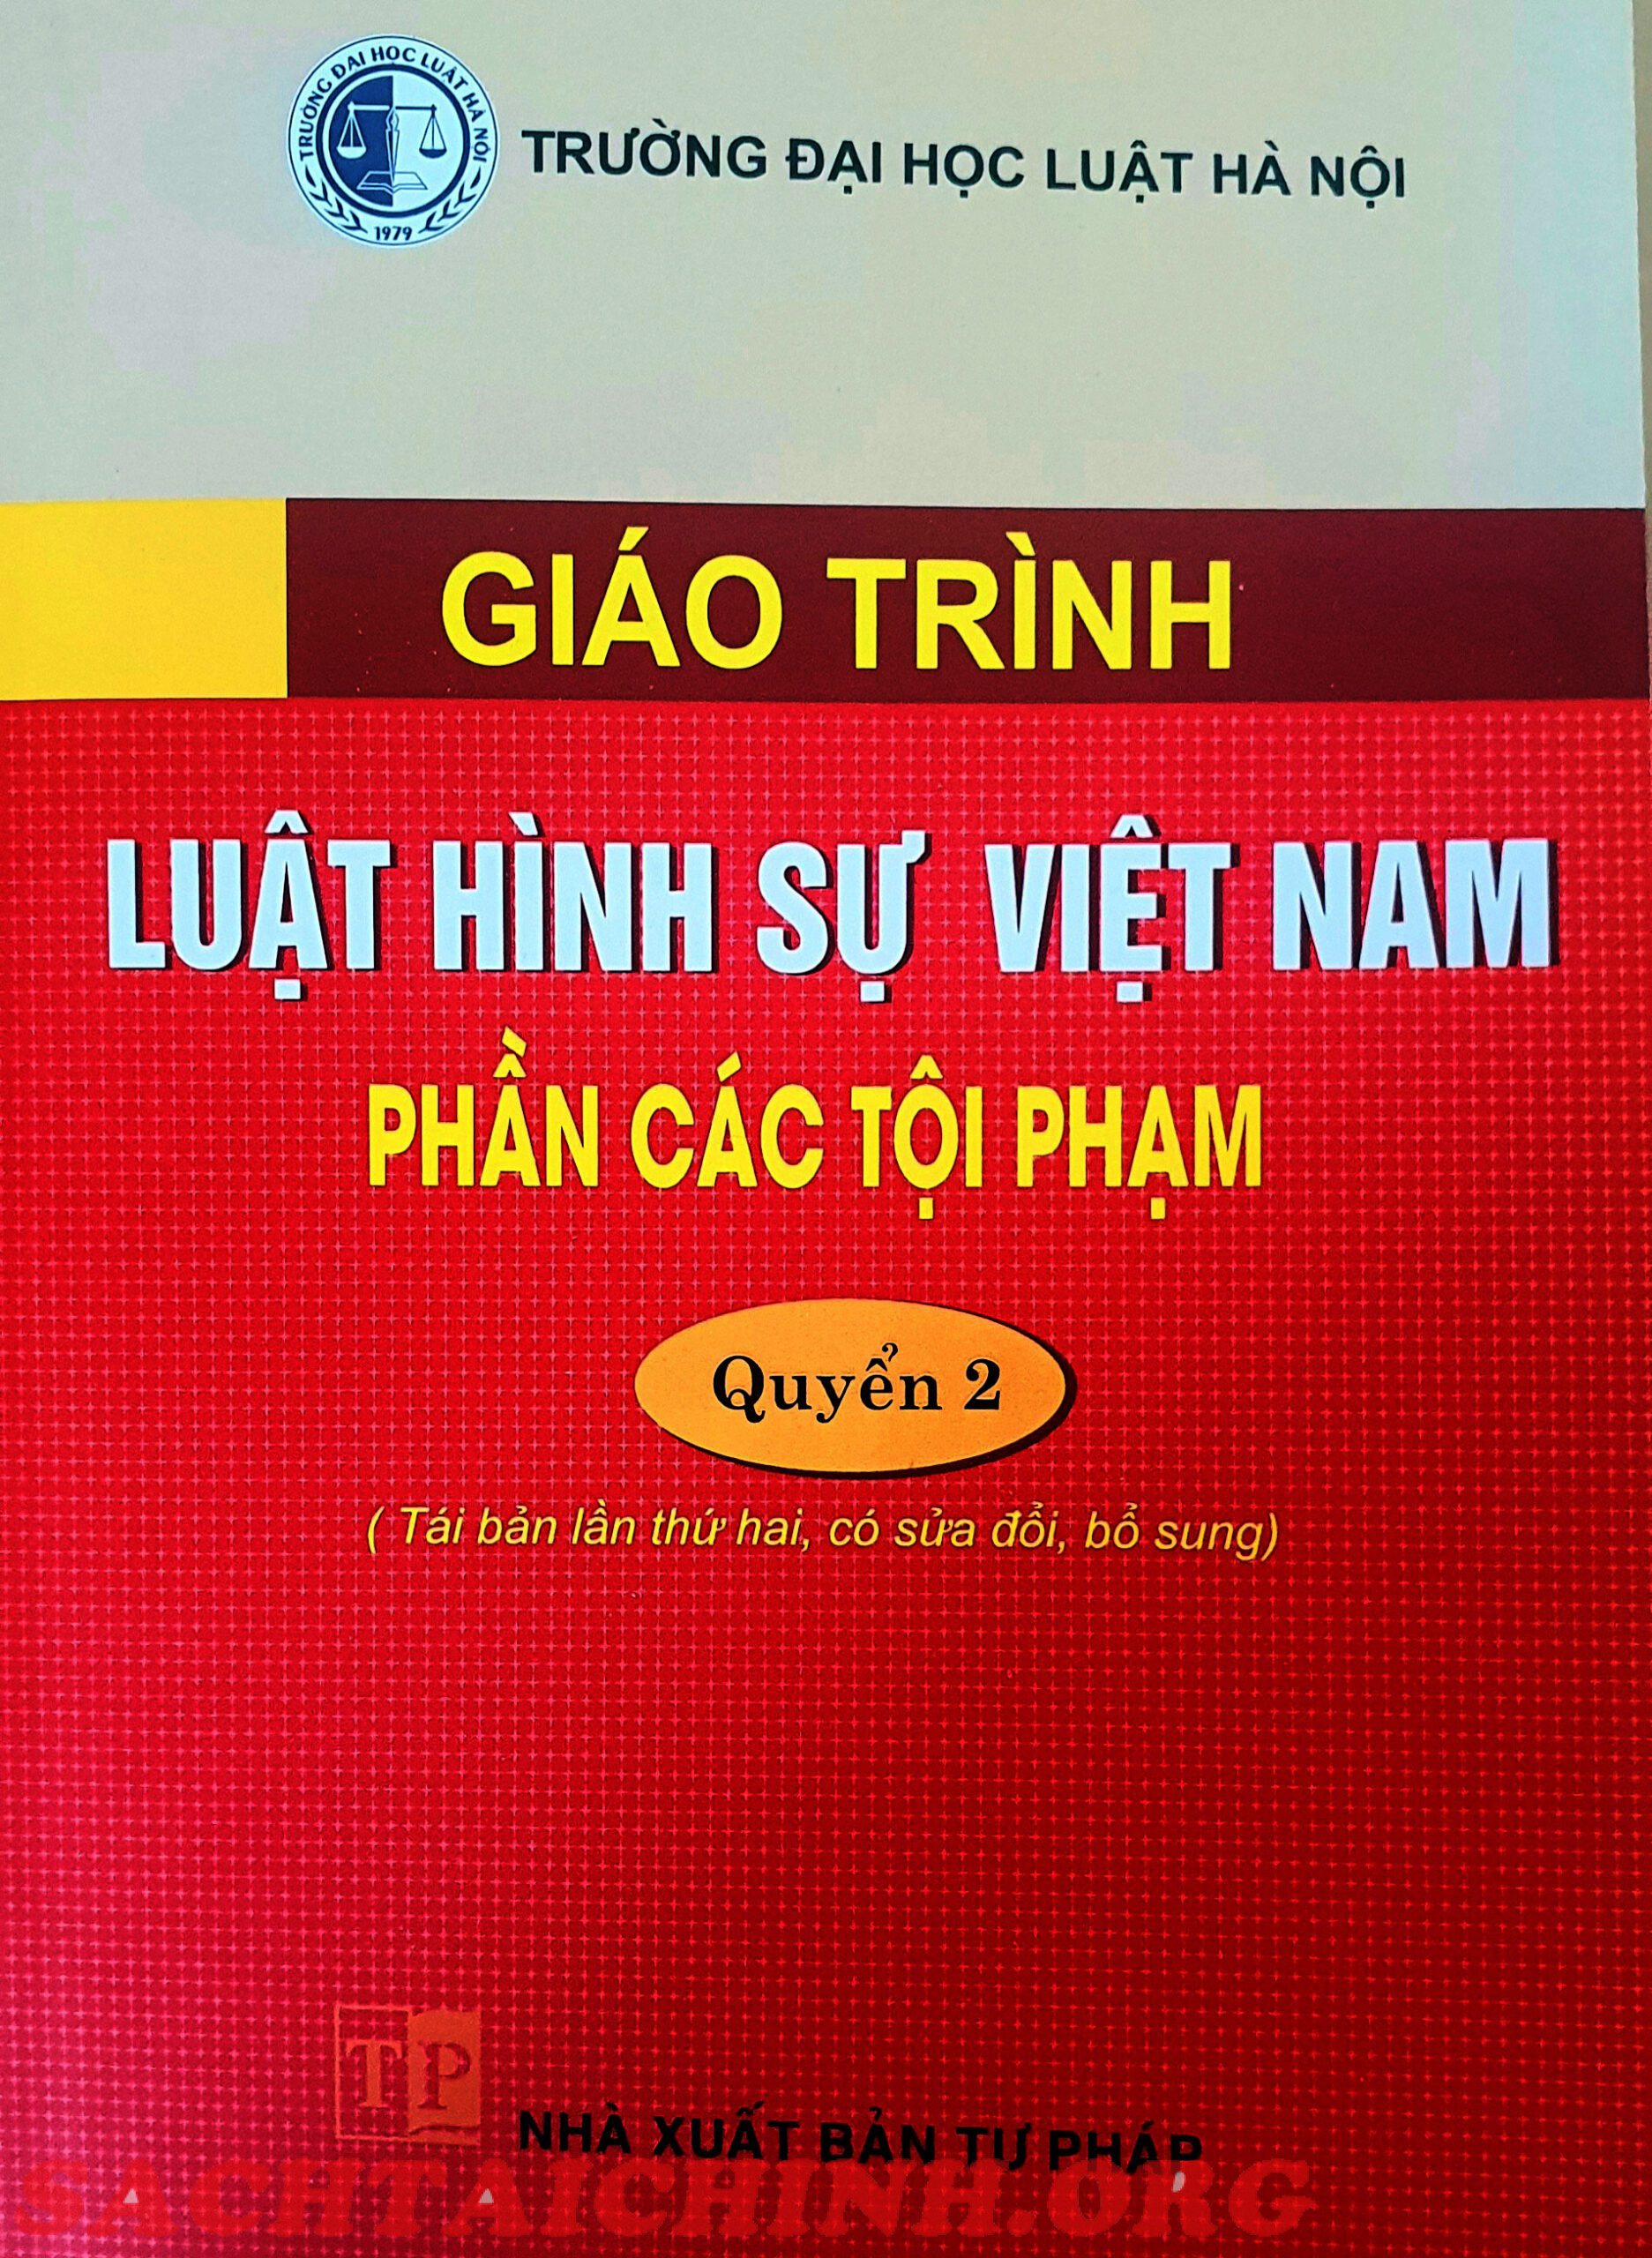 Giáo trình Luật Hình sự Việt Nam Phần Tội Phạm Quyển 2 – Đại học Luật Hà Nội